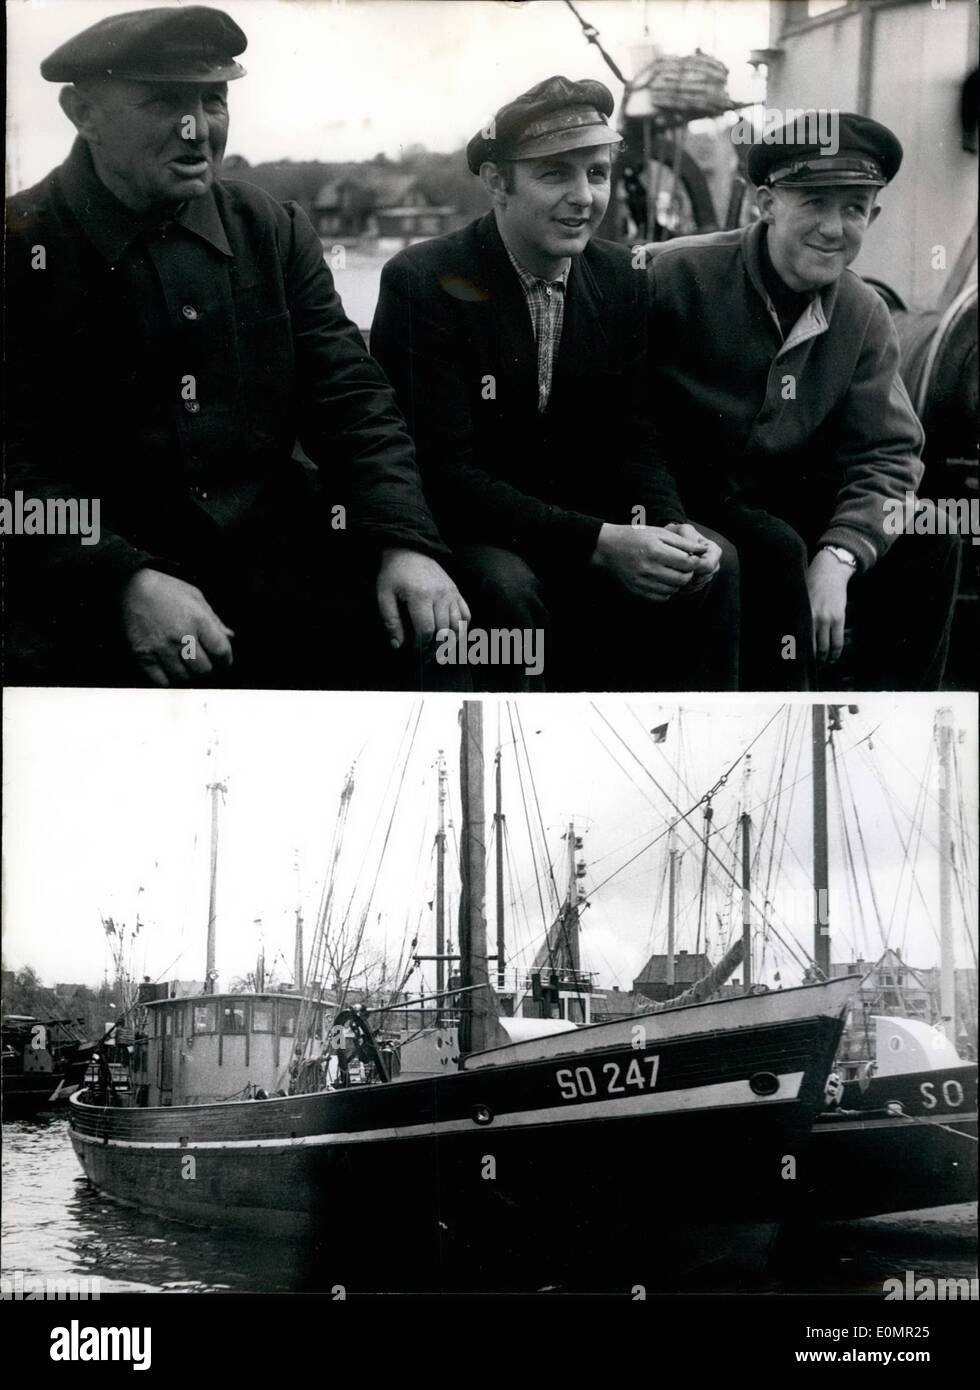 Mai 05, 1956 - Français Ambassy payé 1000 Rubel pour pêcheurs allemands. Deux fisherboats de Kiel/Allemagne ont été capturés par les Soviétiques au large de Memel, sur la côte de East-Prussia. Les bateaux étaient entrés dans la zone de 12 milles--pêche, lorsqu'ils ont été salmons. Les lames ont été portées à l'Harbour Memel. Les Soviétiques étaient très sympa et correct, mais ils ont dit aux pêcheurs qu'ils auraient à payer 1000 Rubels. Un câble à l'ambassade allemande à Moscou a été répondu que l'Ambasy va payer pour eux Banque D'Images